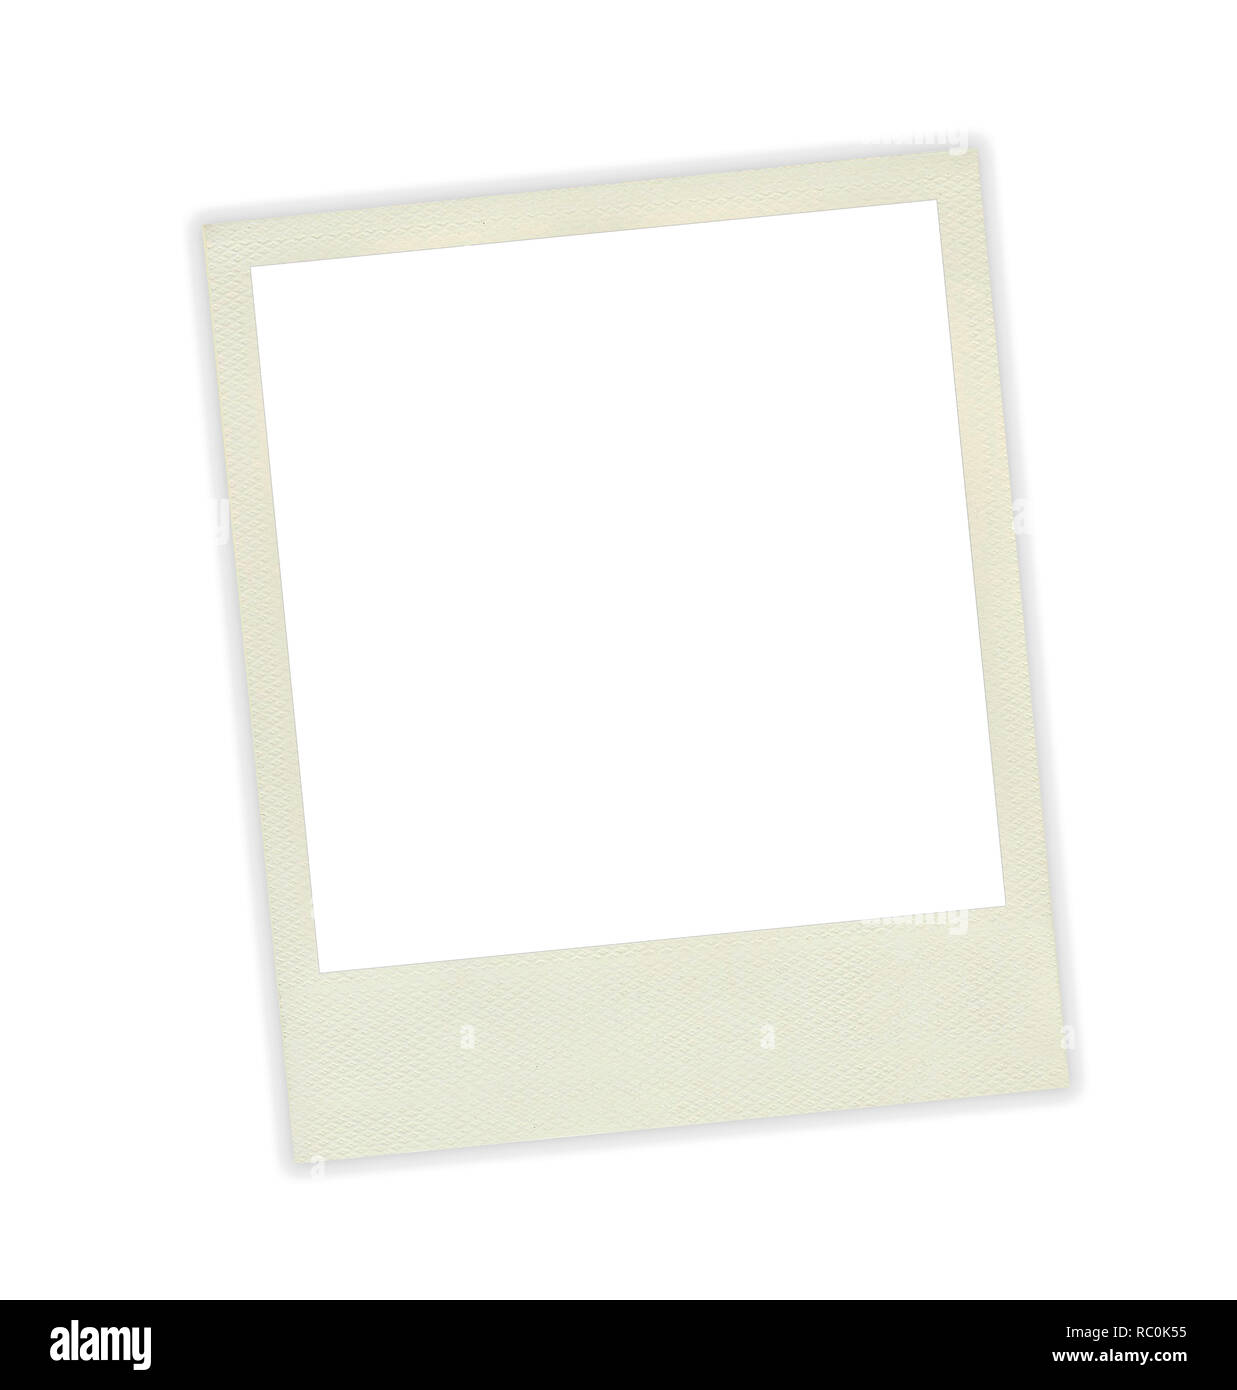 Bilderrahmen polaroid Vorlage auf weißem Hintergrund Stockfotografie - Alamy